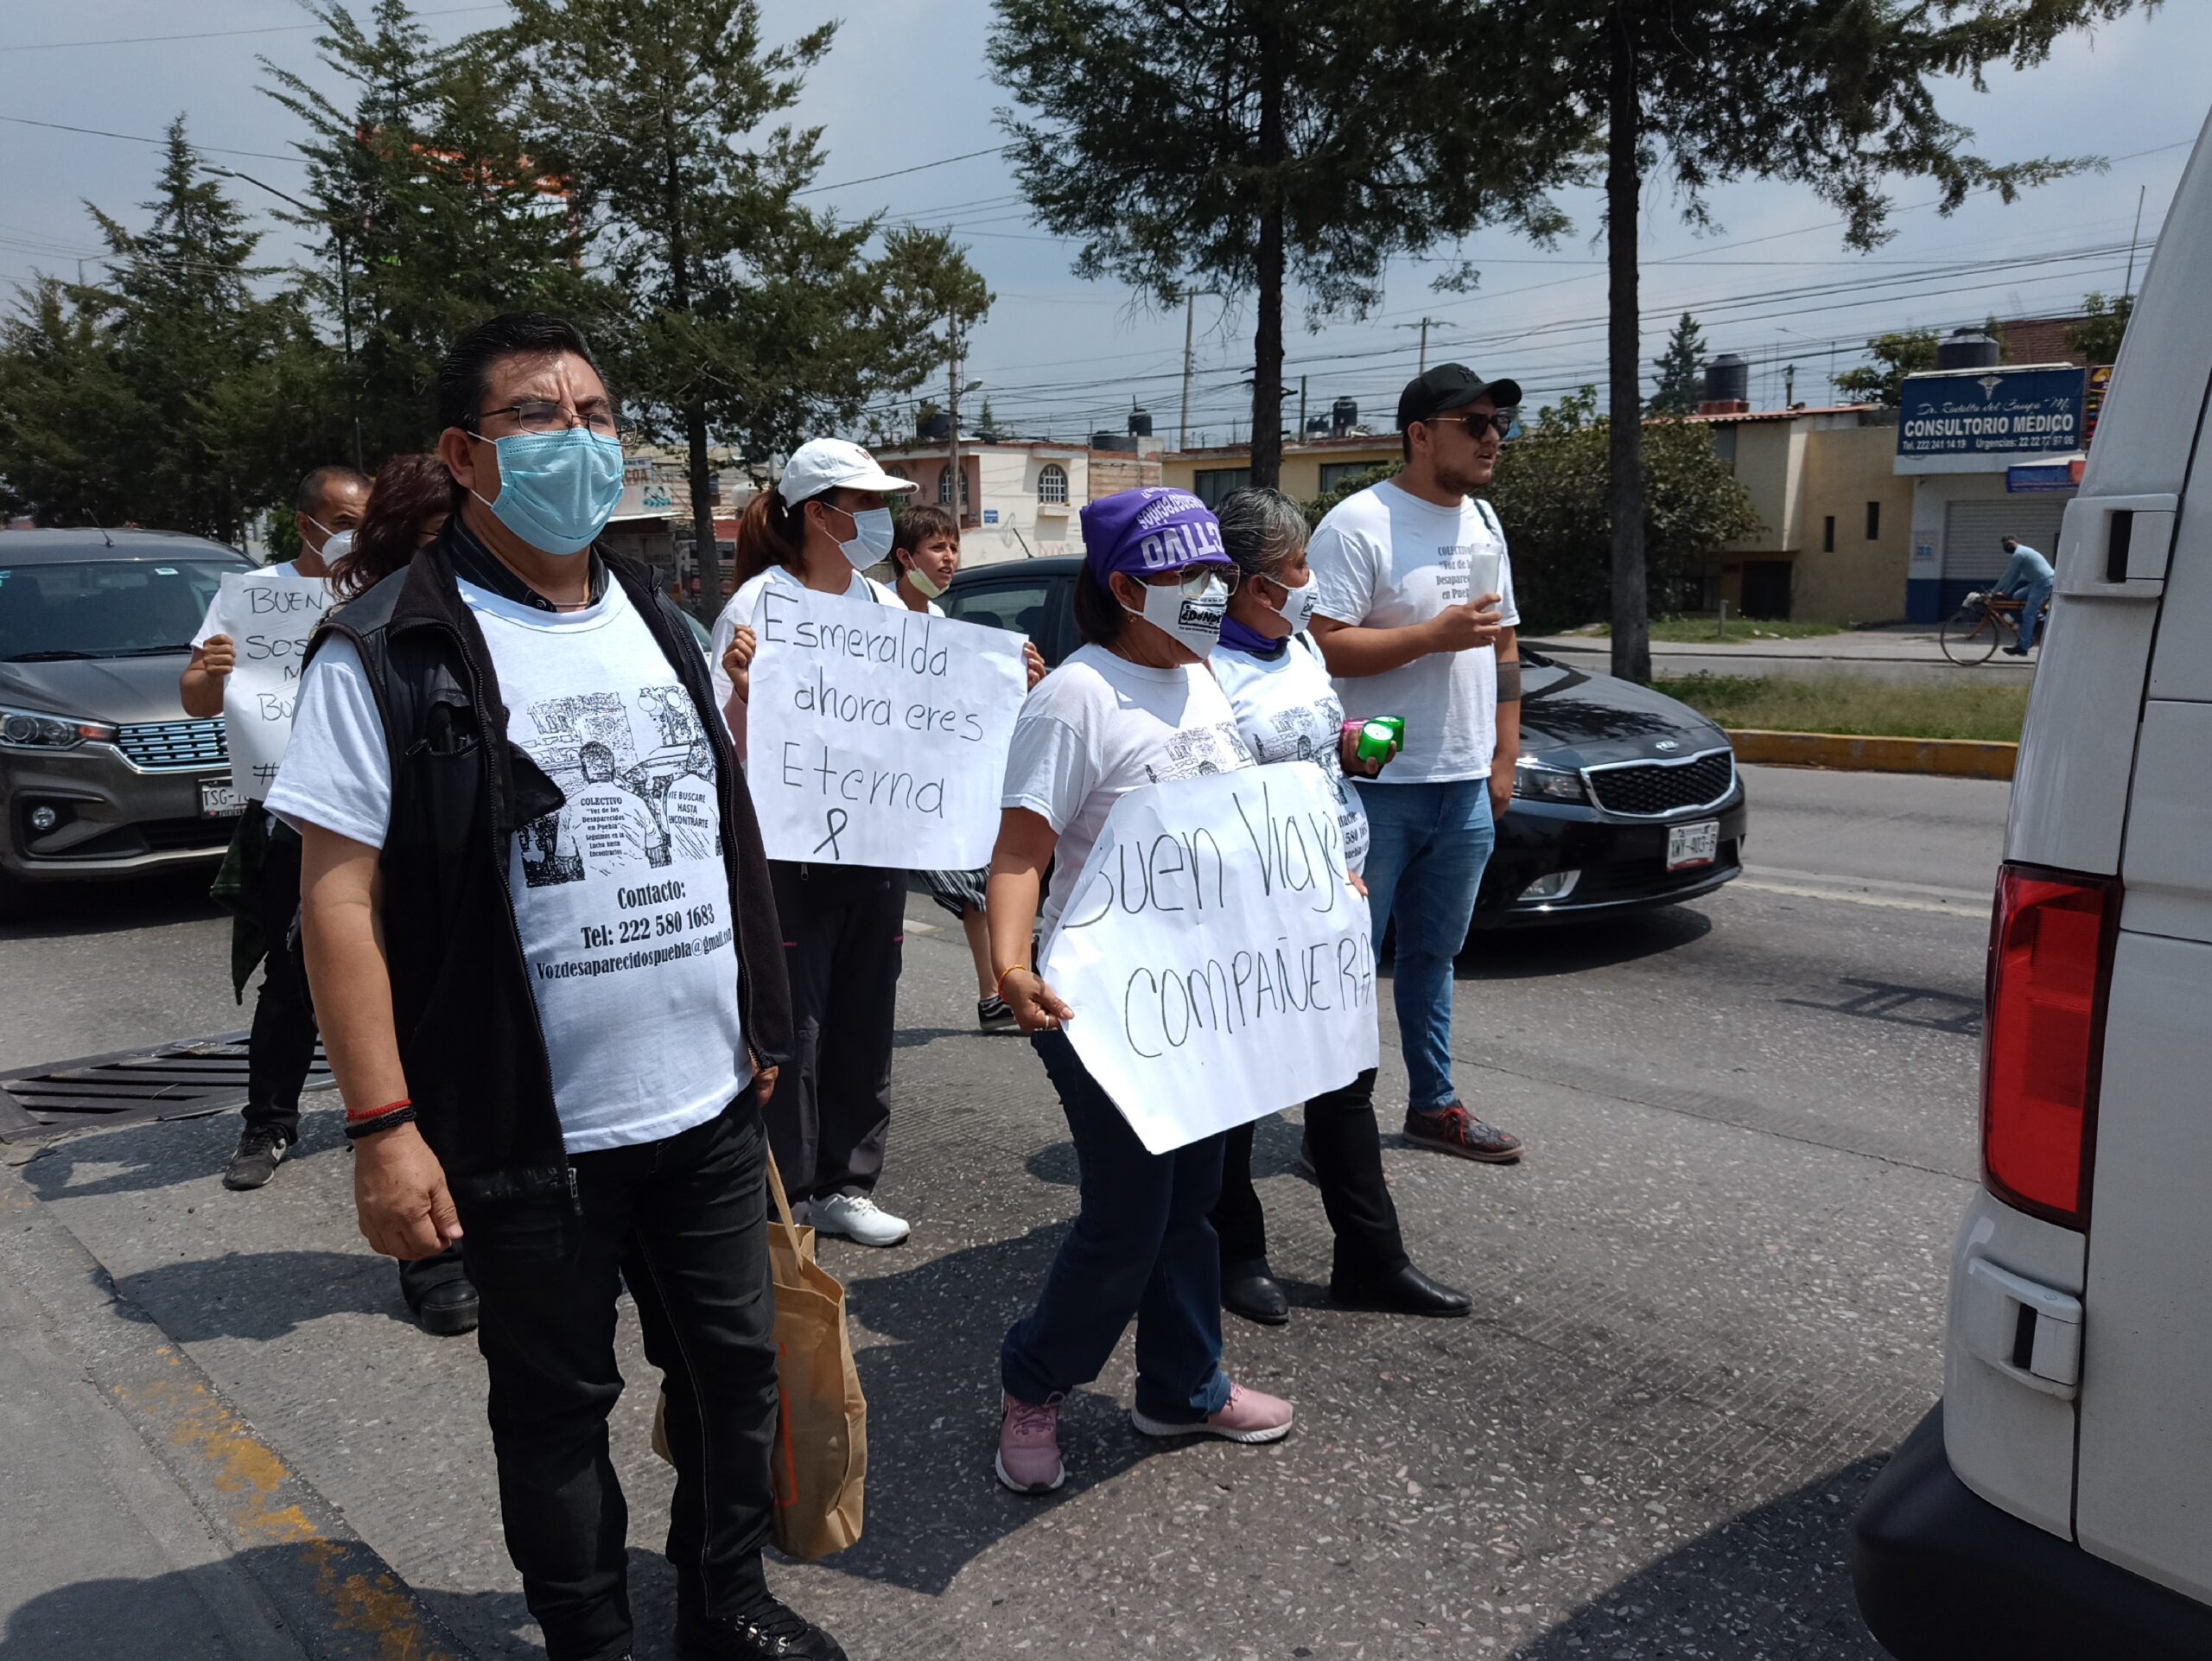 Esmeralda Gallardo asesinato impune Puebla madre buscadora marcha protesta